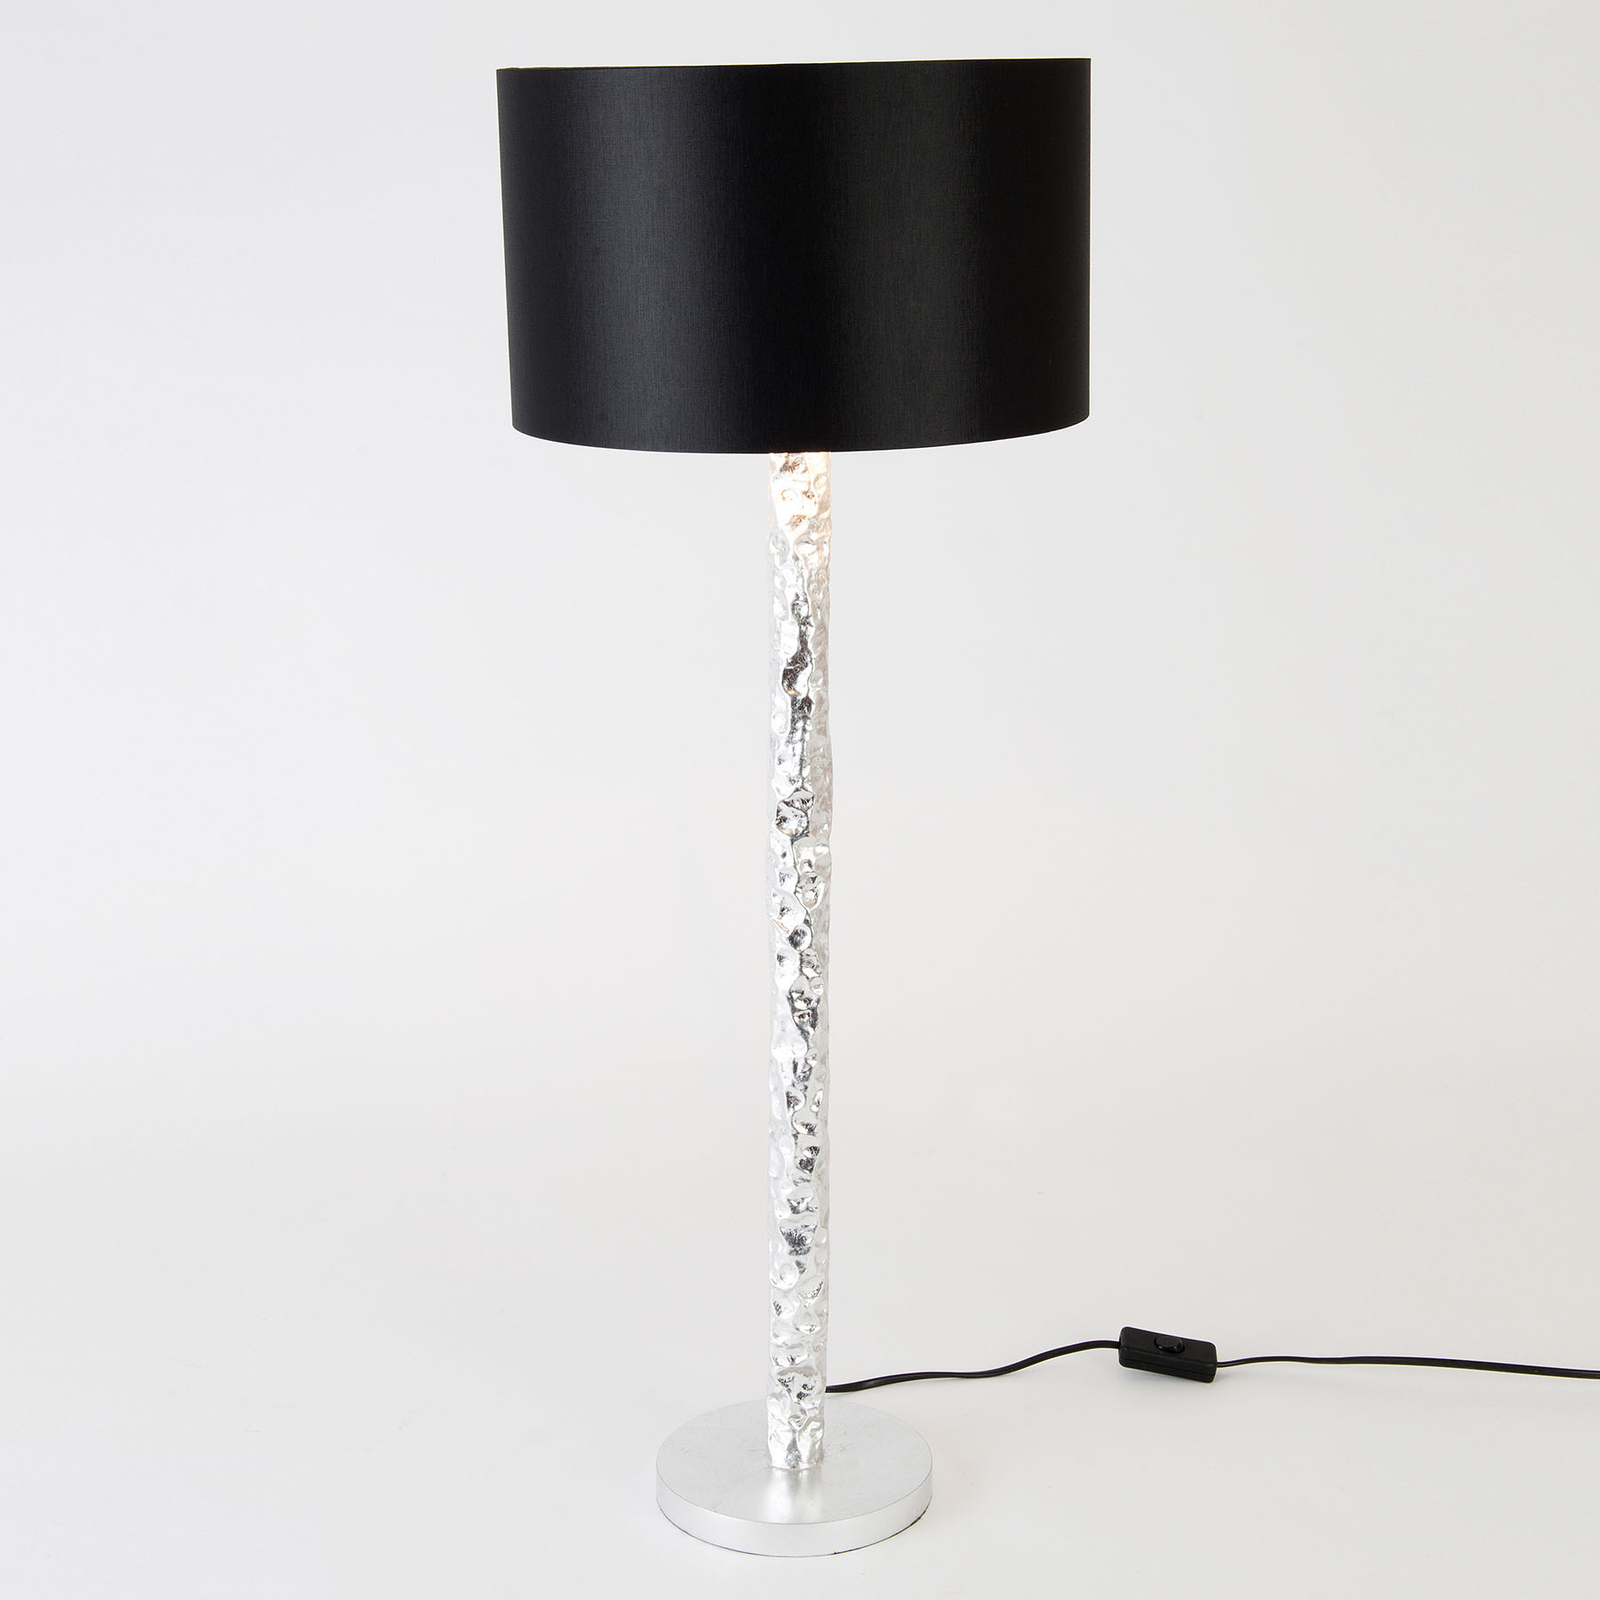 Cancelliere Rotonda table lamp black/silver 79cm